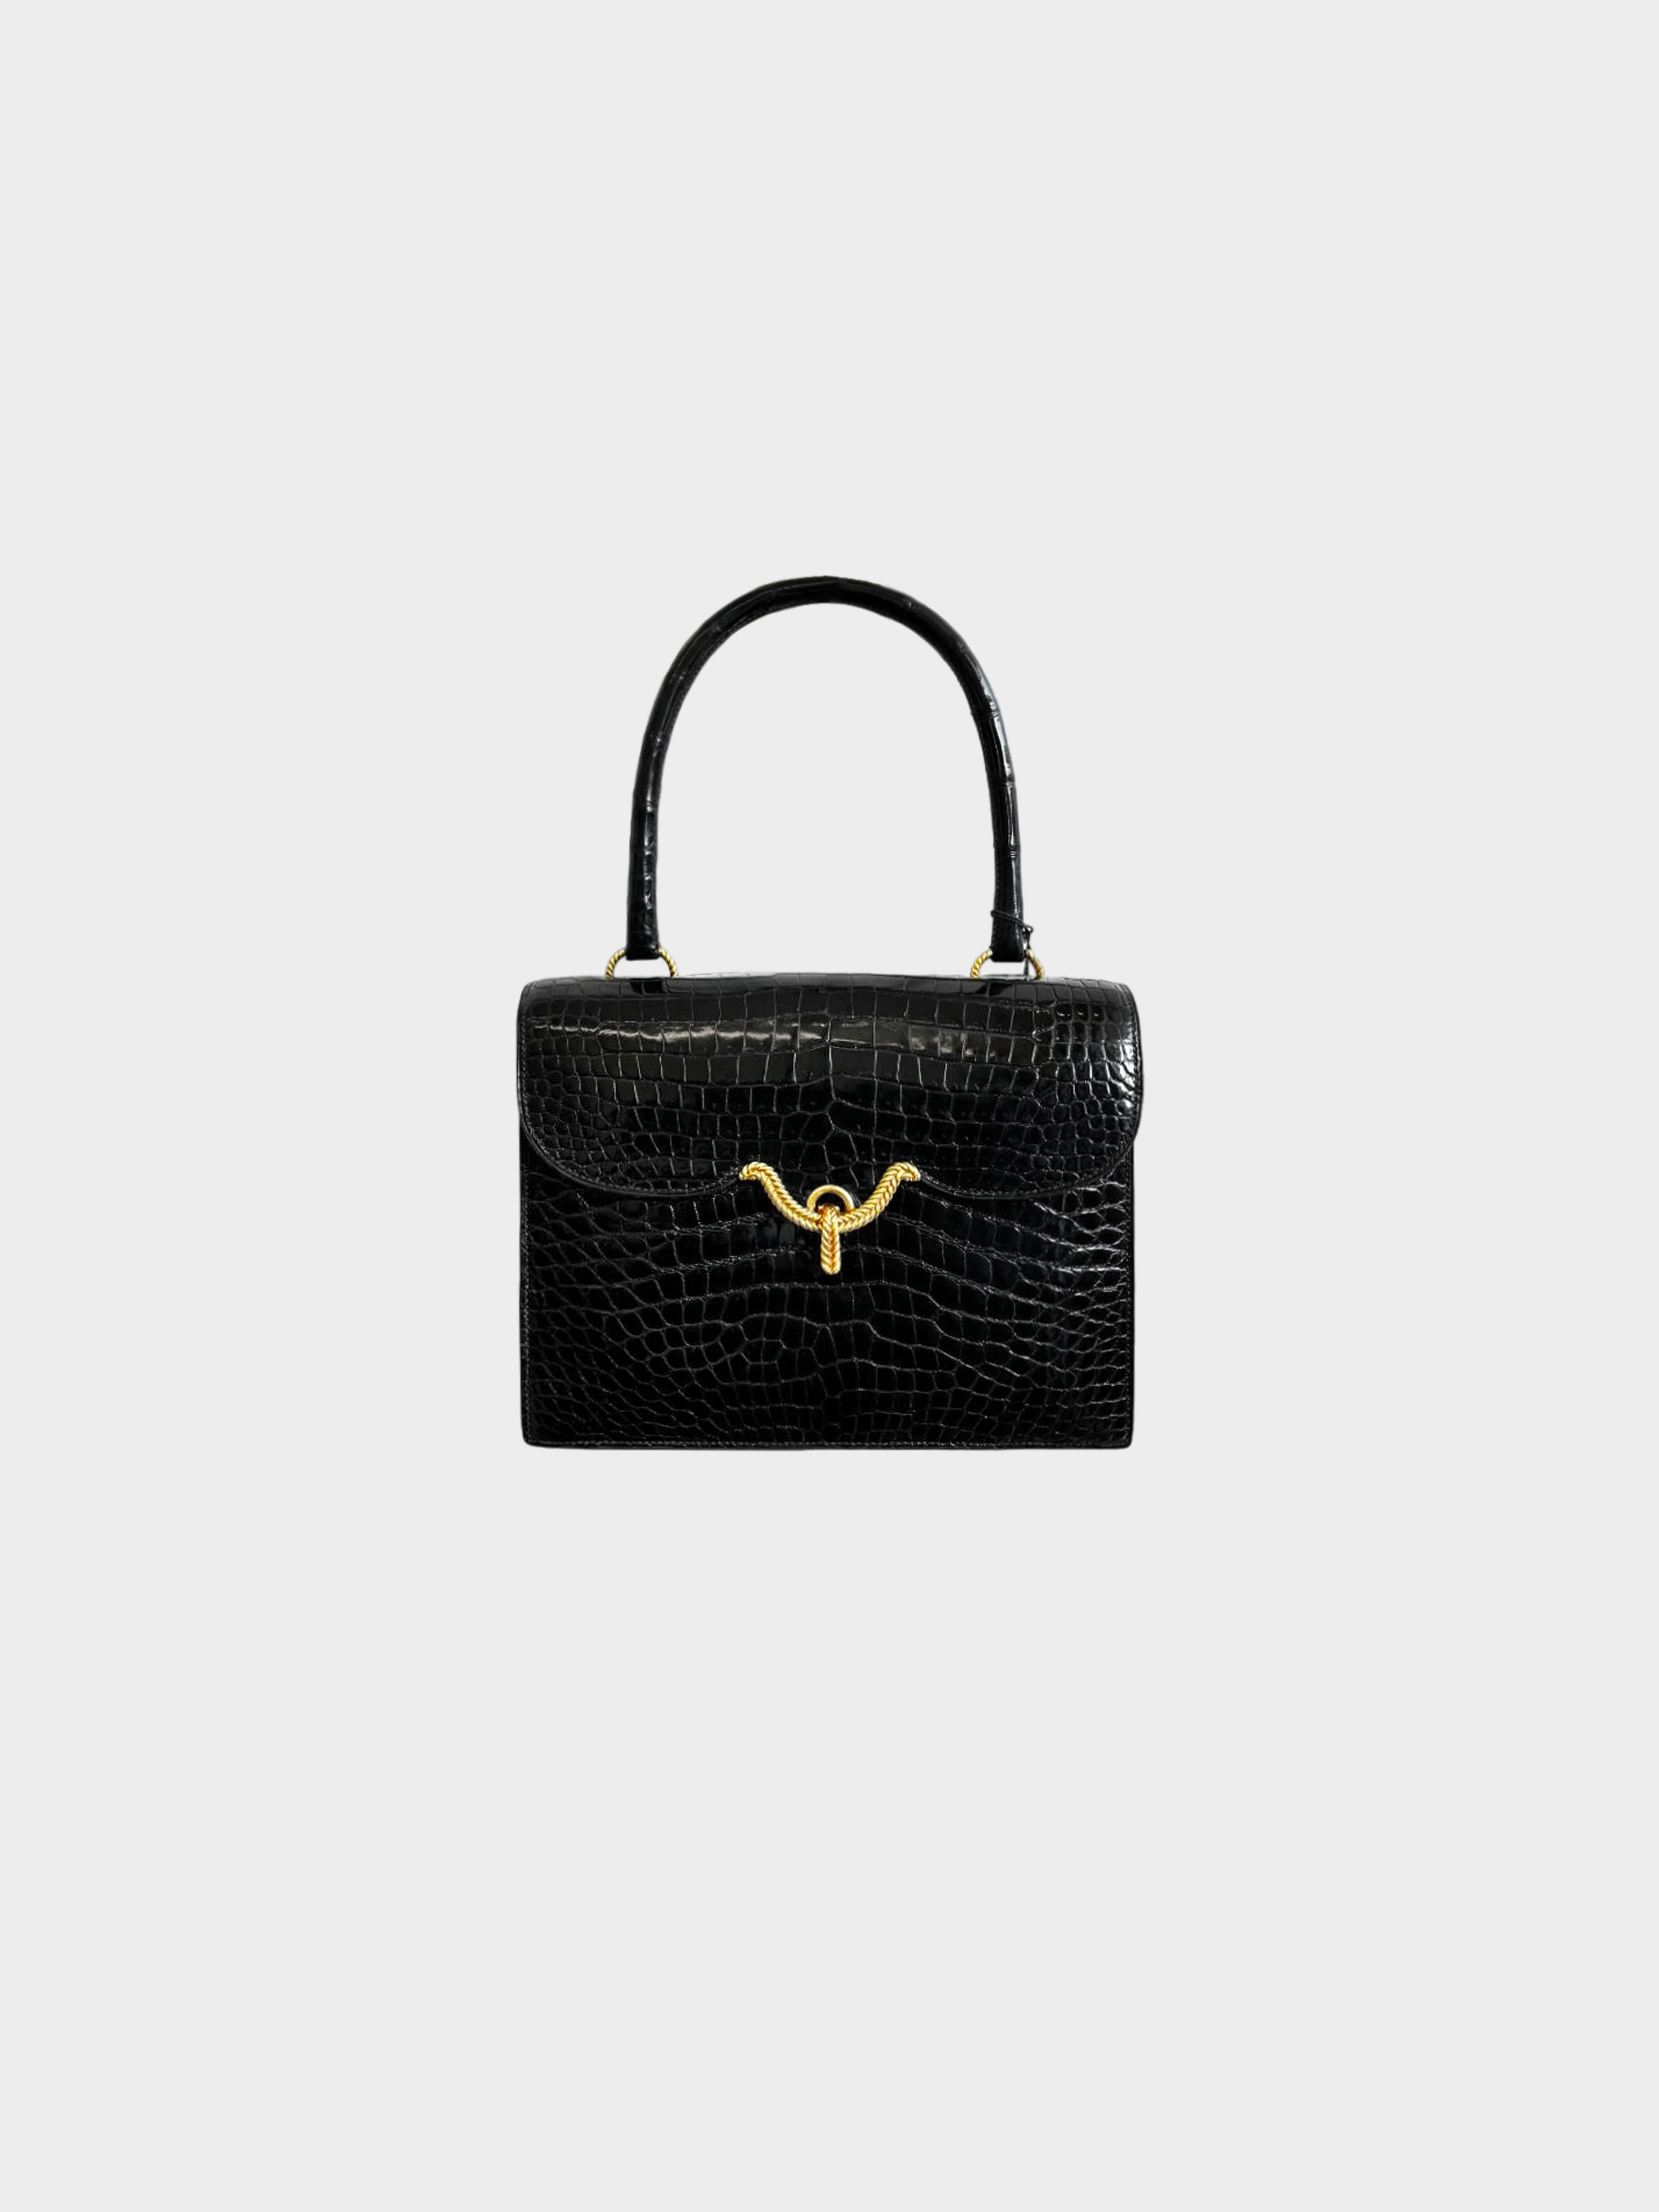 Hermès 1960s Black Sac Vasco Handbag